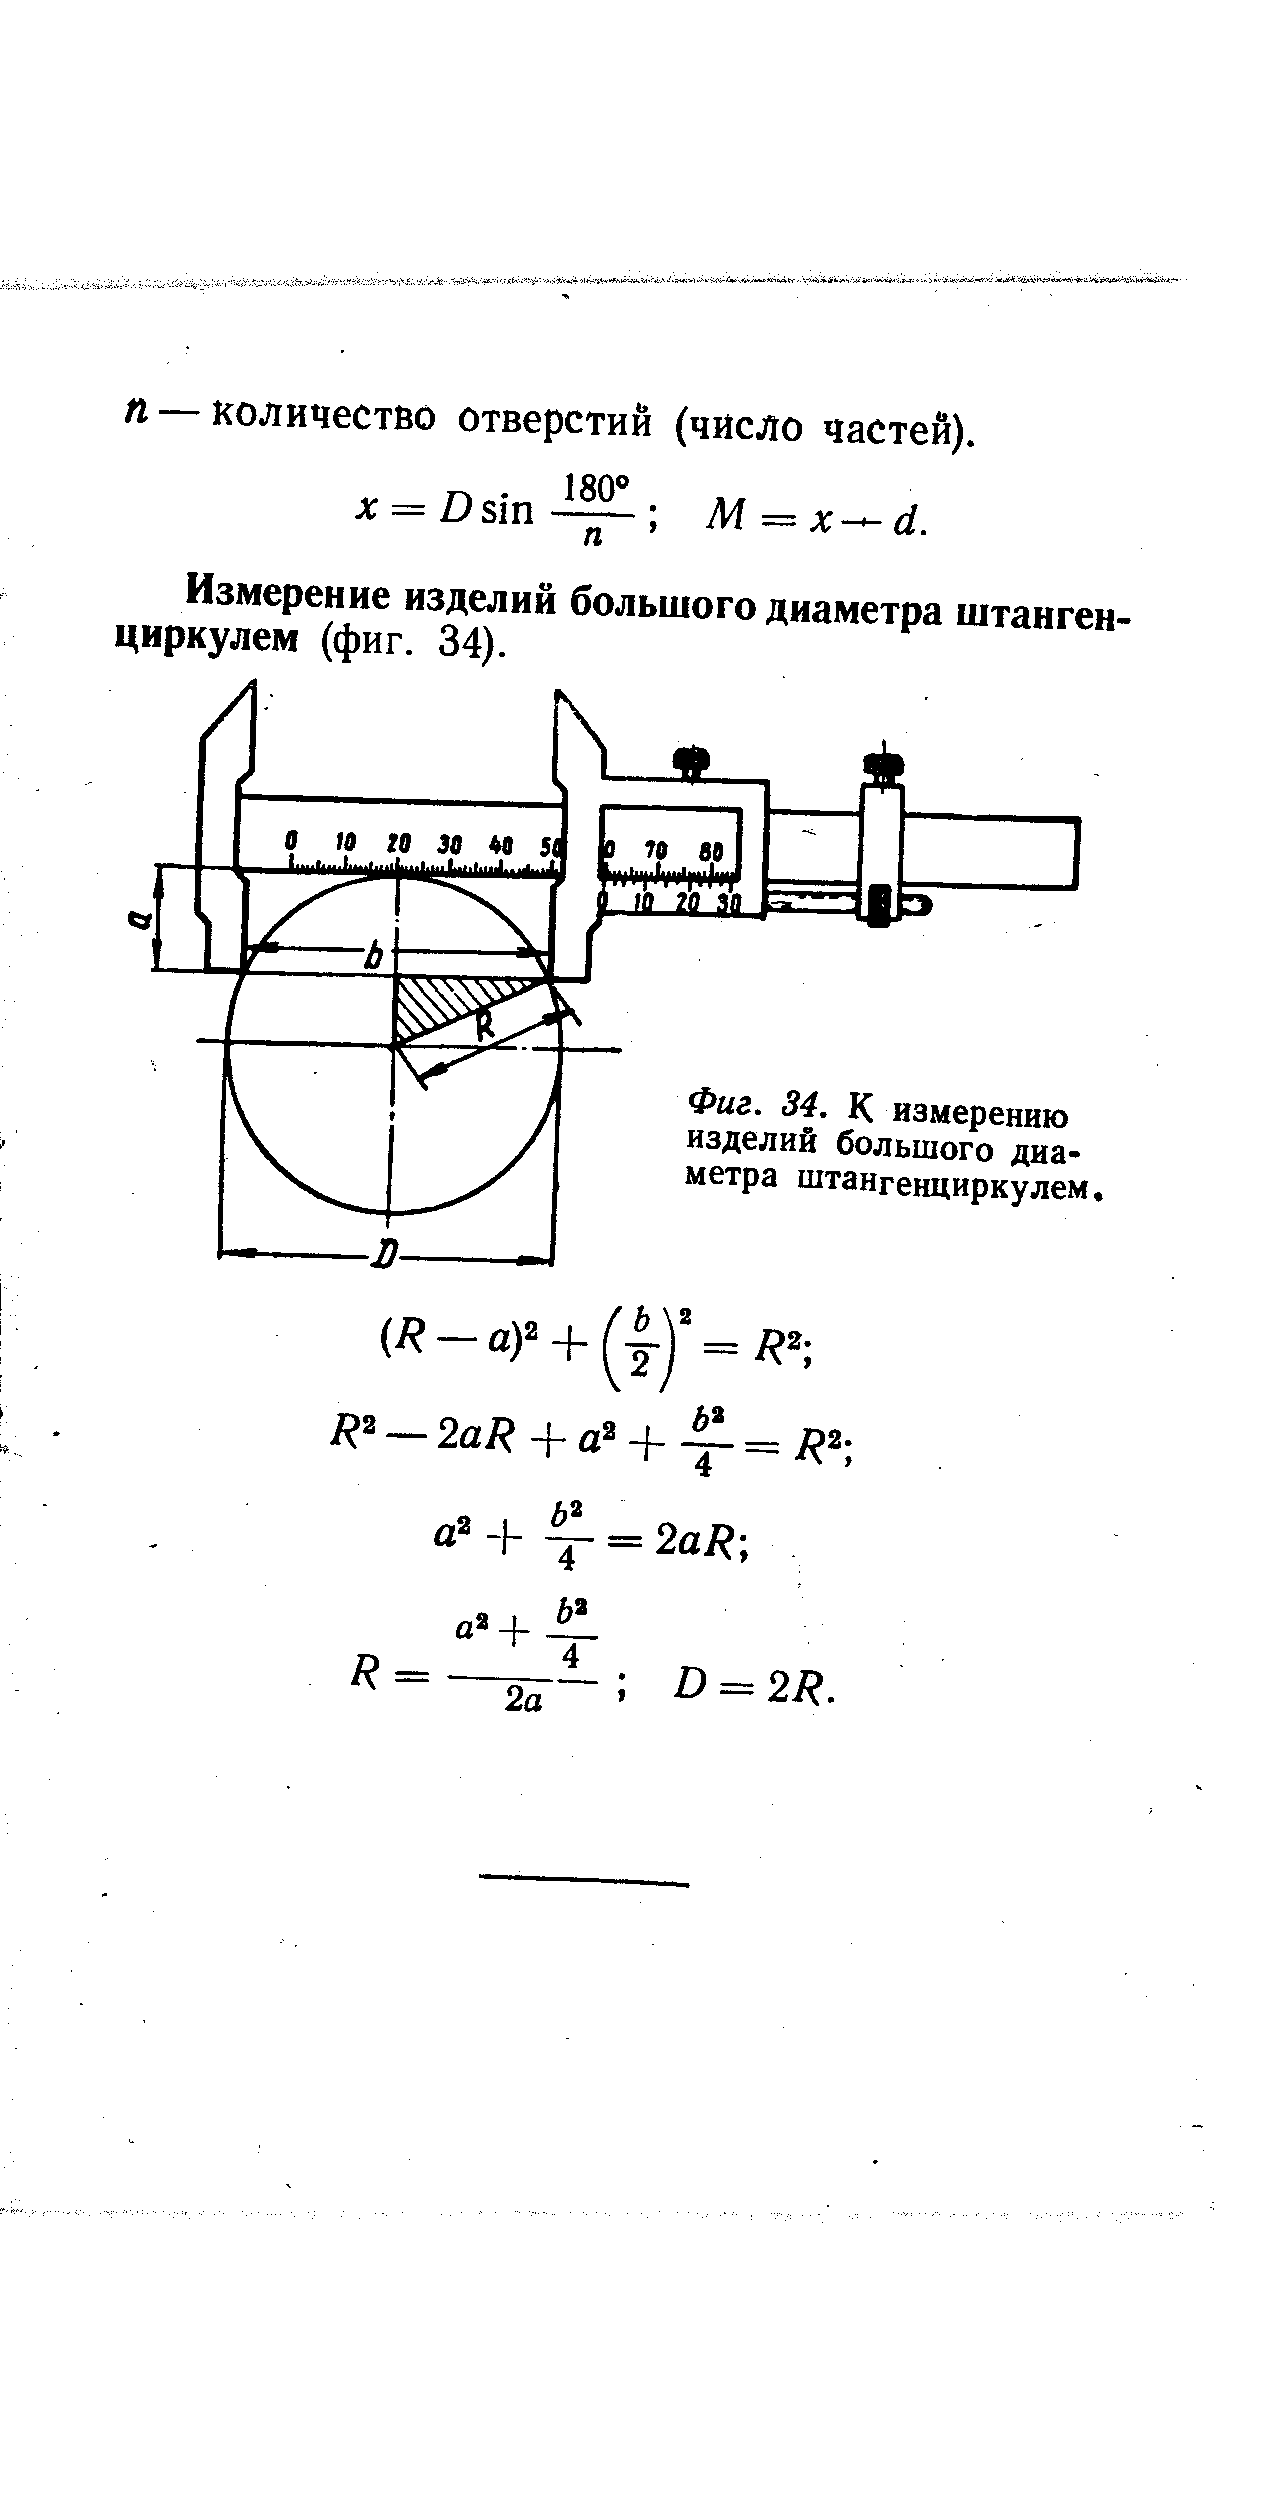 Измерение изделий большого диаметра штангенциркулем (фиг. 34).
